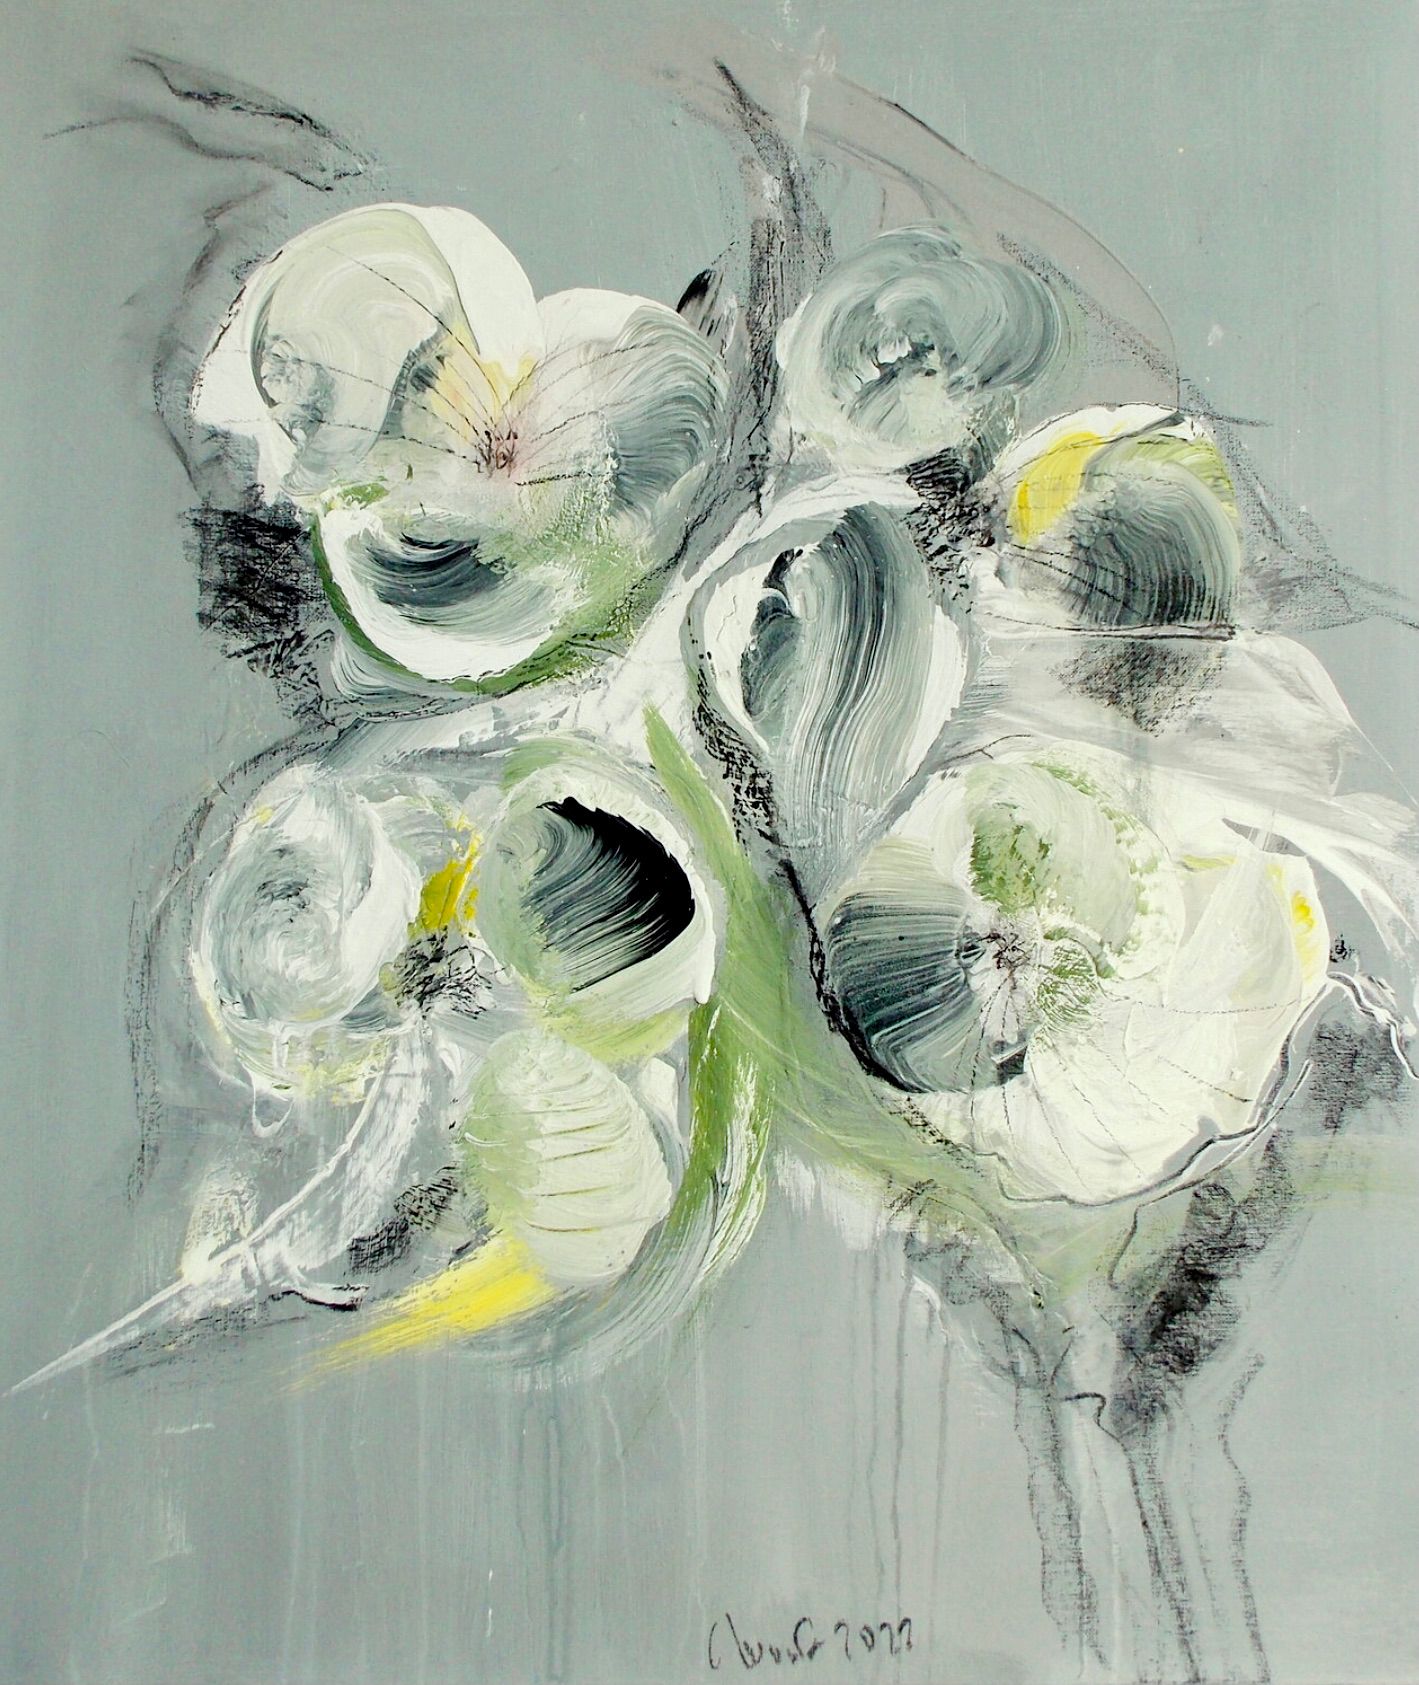 En el cuadro expresionista abstracto de flores "Blumenrausch 2" de Christa Haack dominan los colores beige, verde y negro.